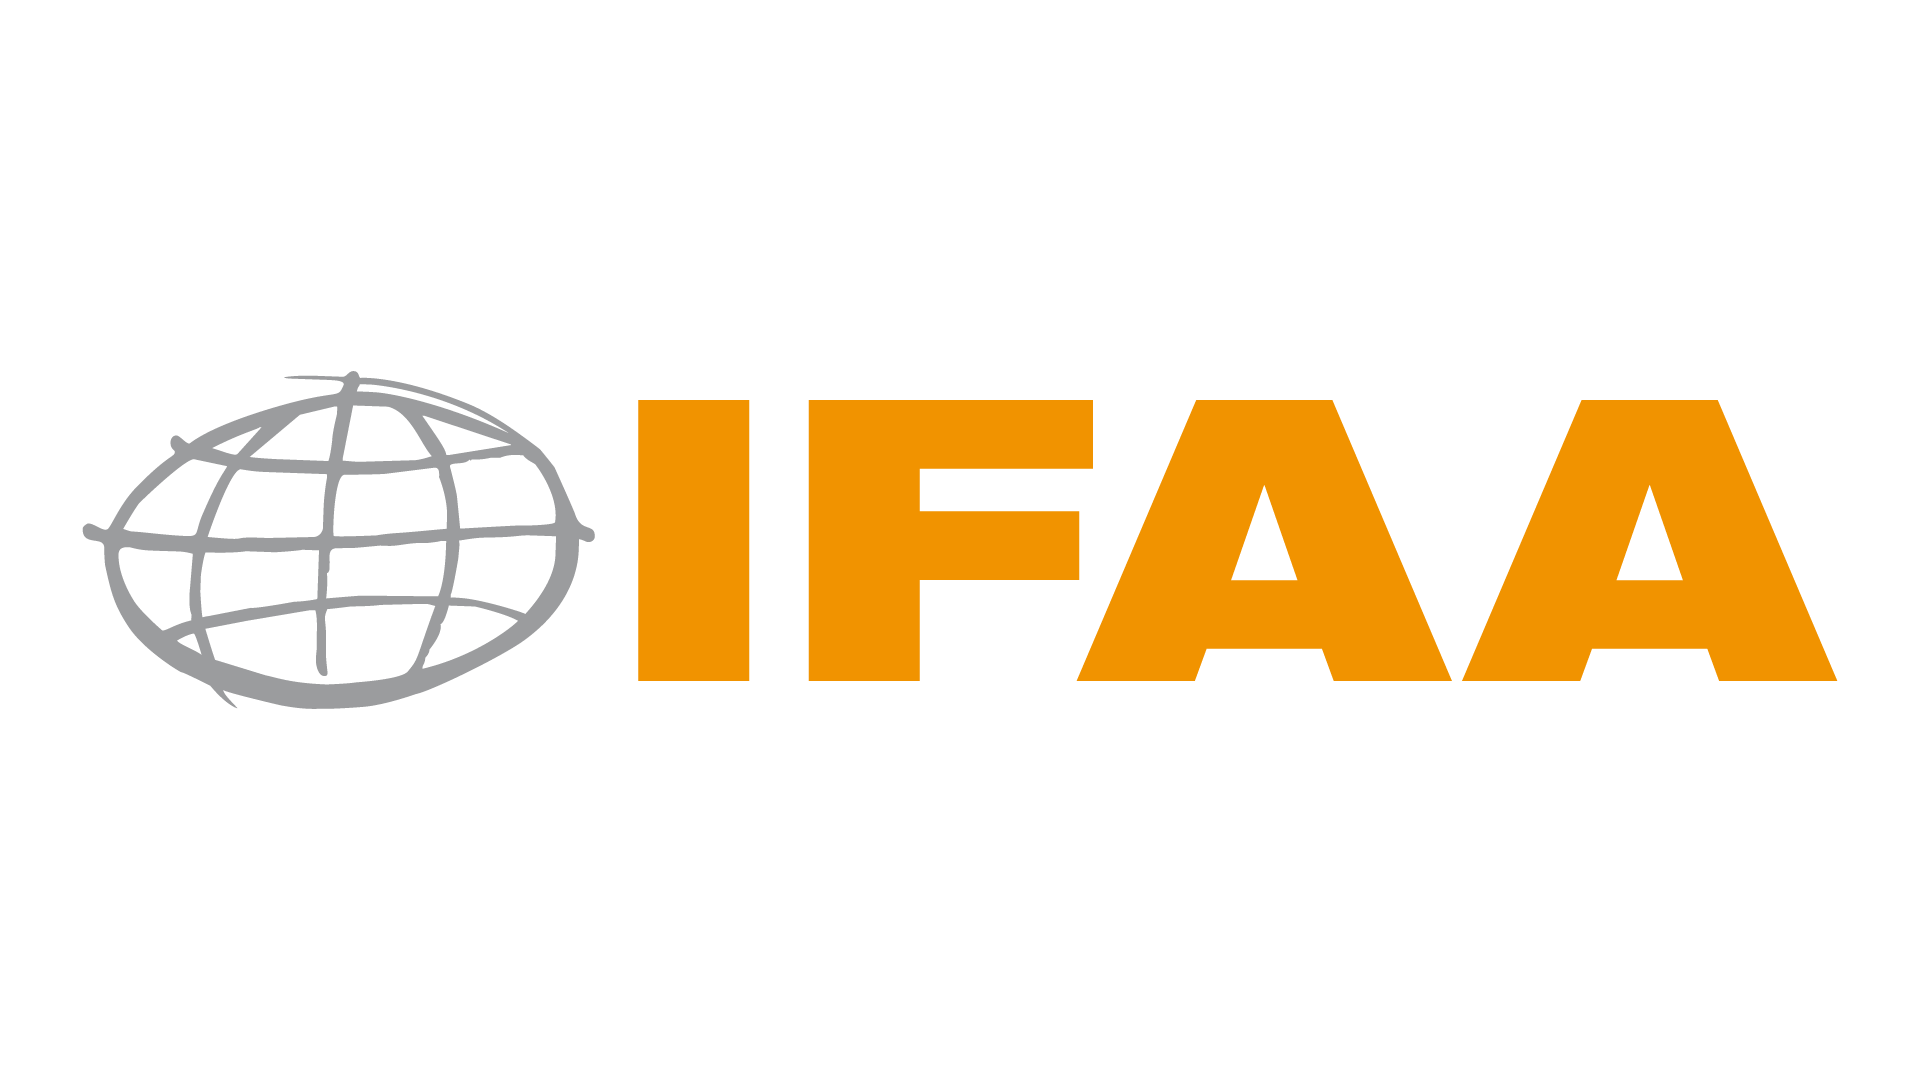 Ifaa Logo